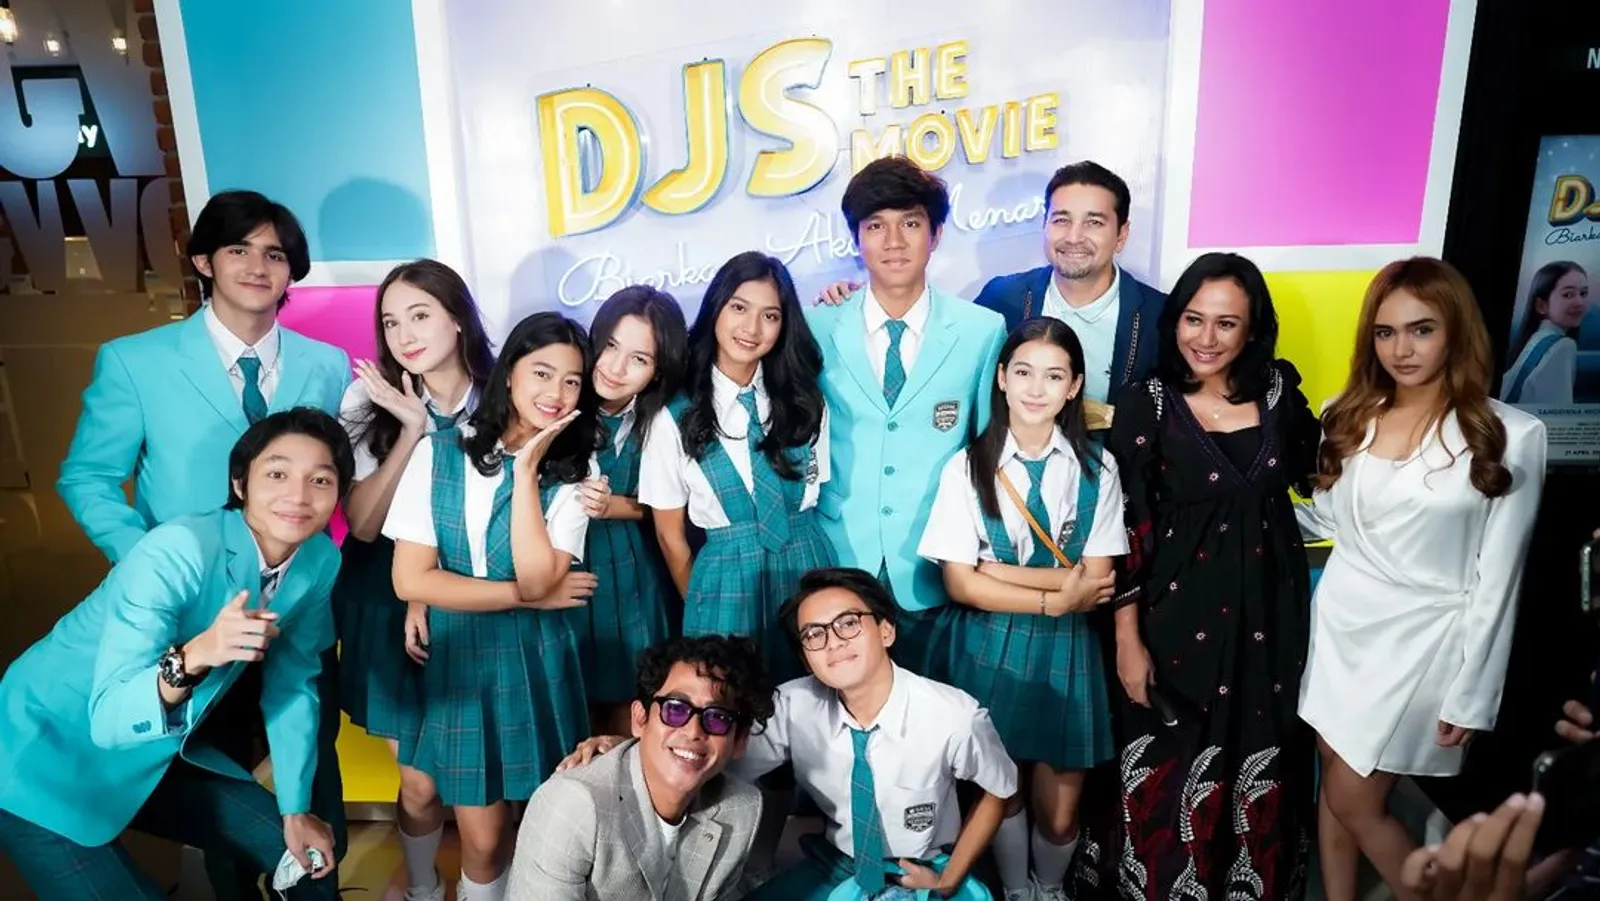 Ada Dita Karang, 'DJS The Movie: Biarkan Aku Menari' Tayang 21 April